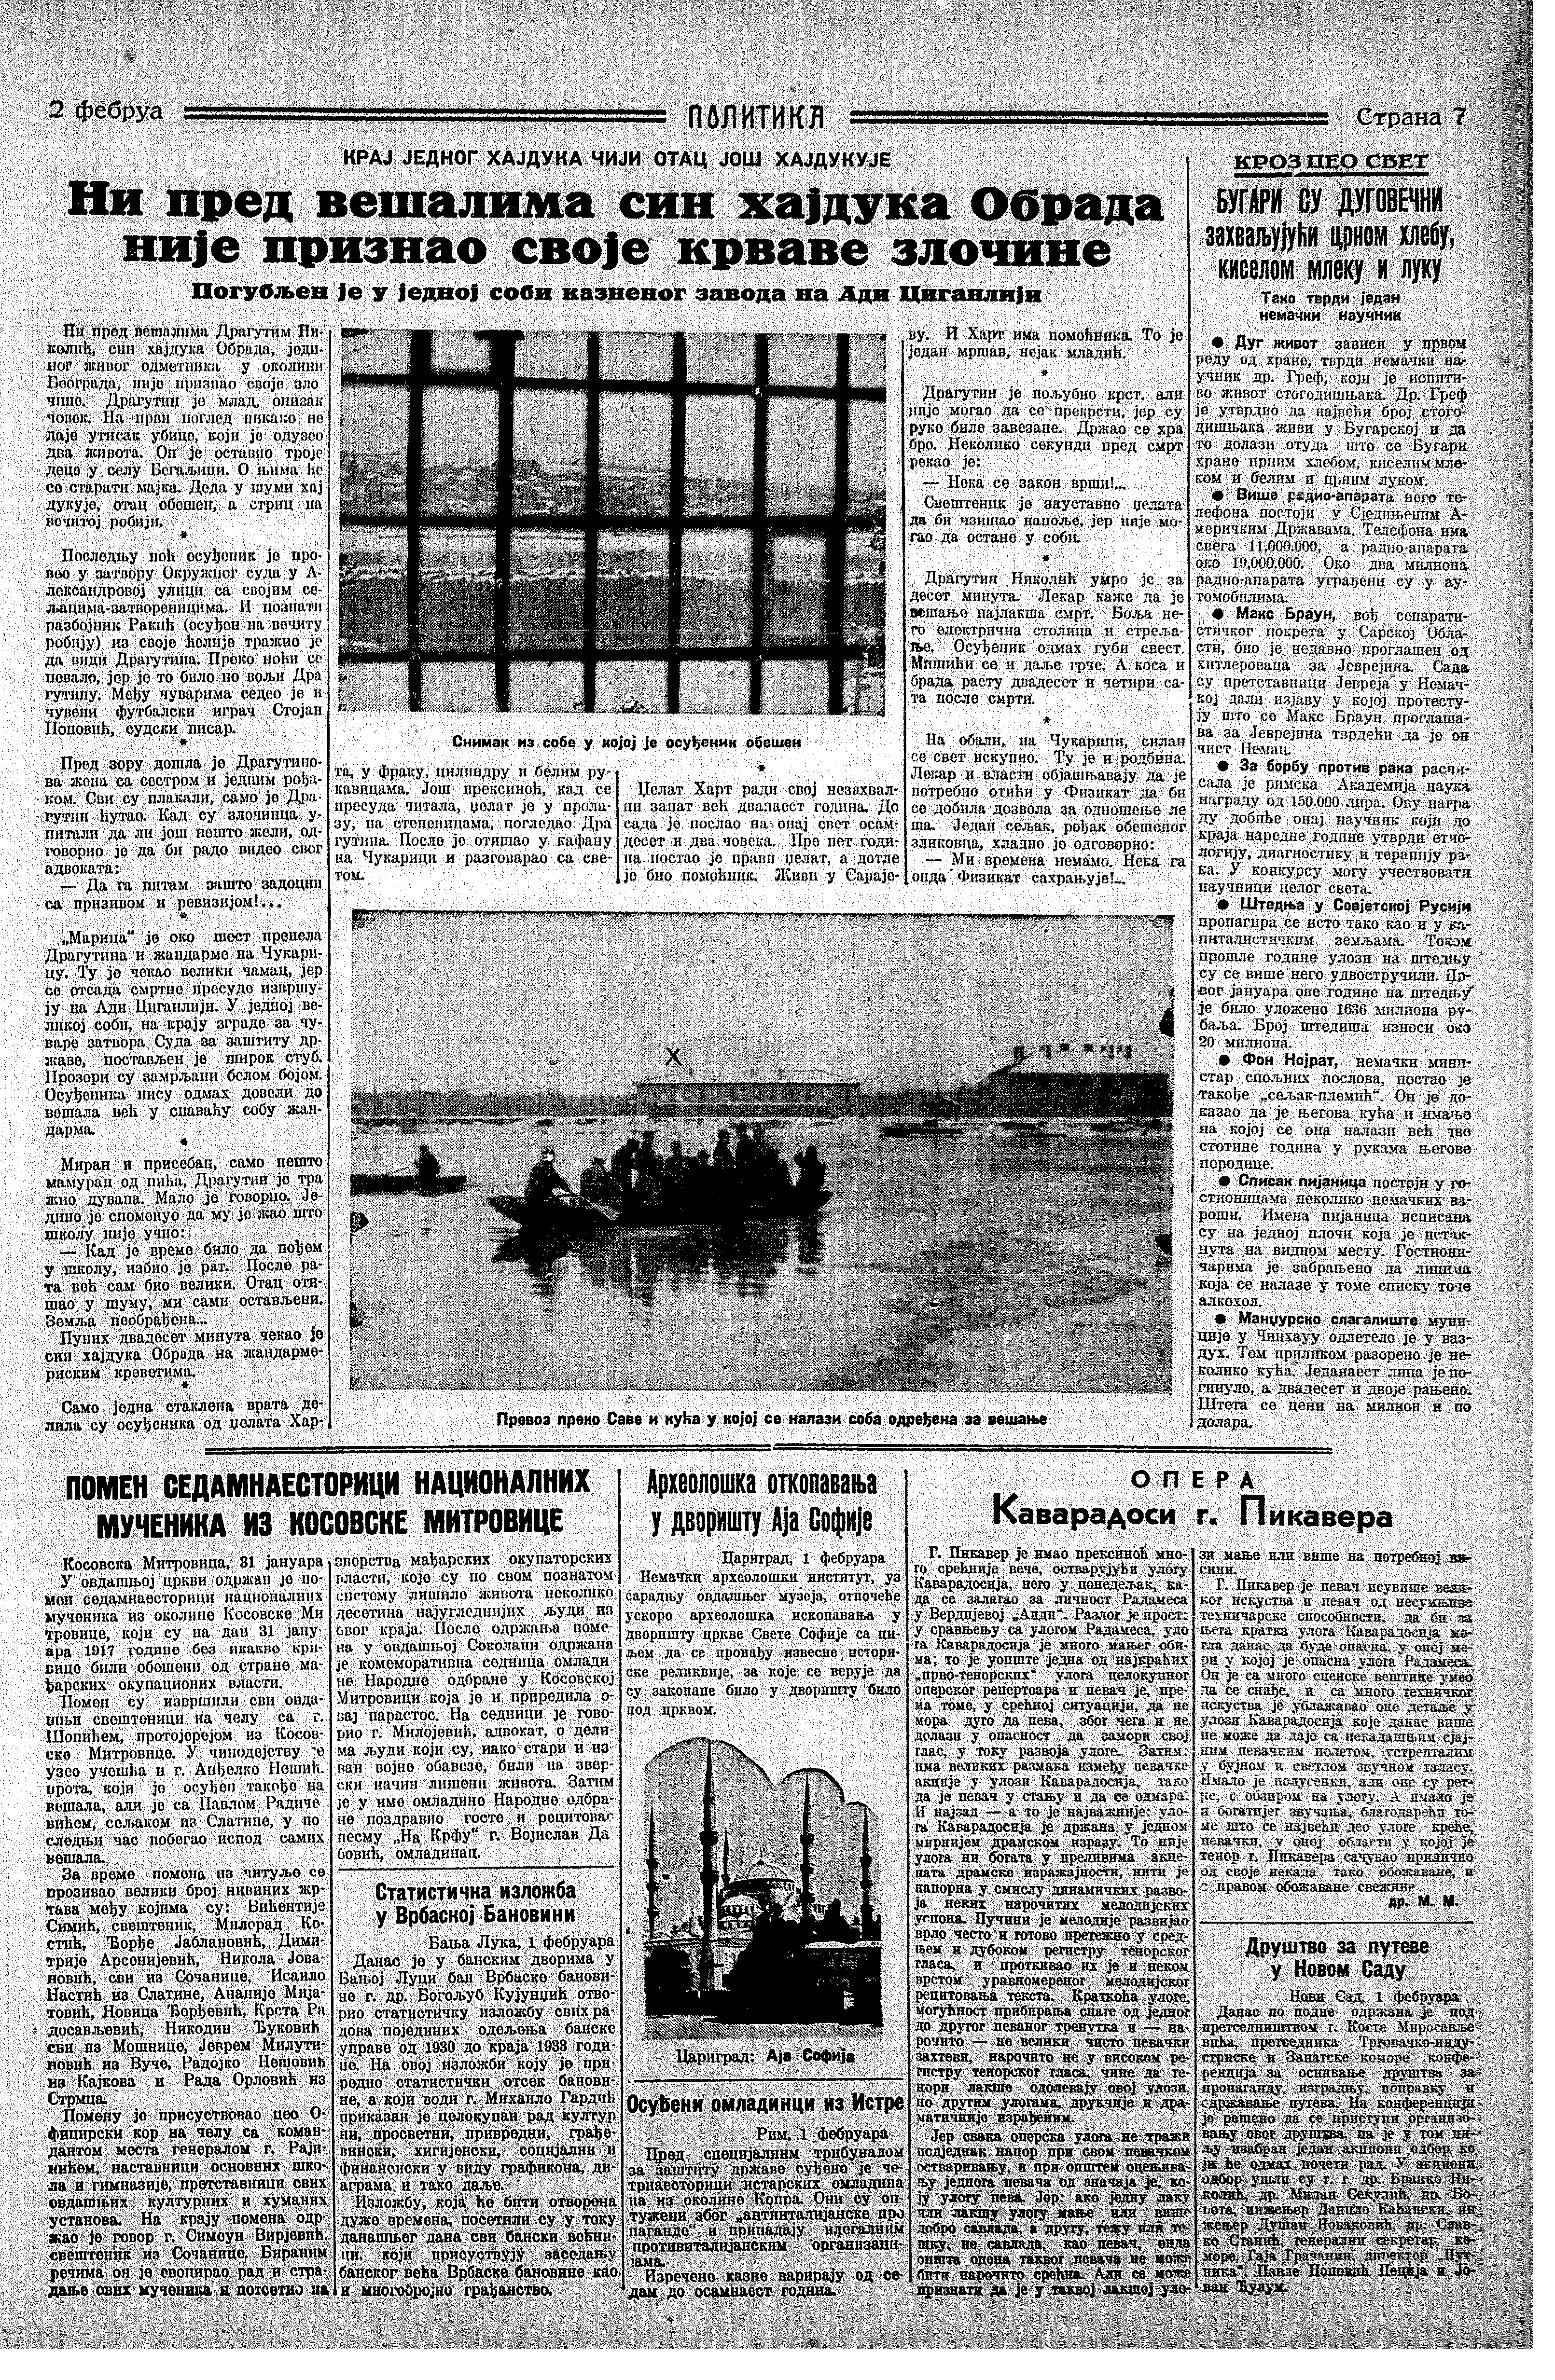 Ni pred vešalima ne priznaje, Politika, 02.02.1935.